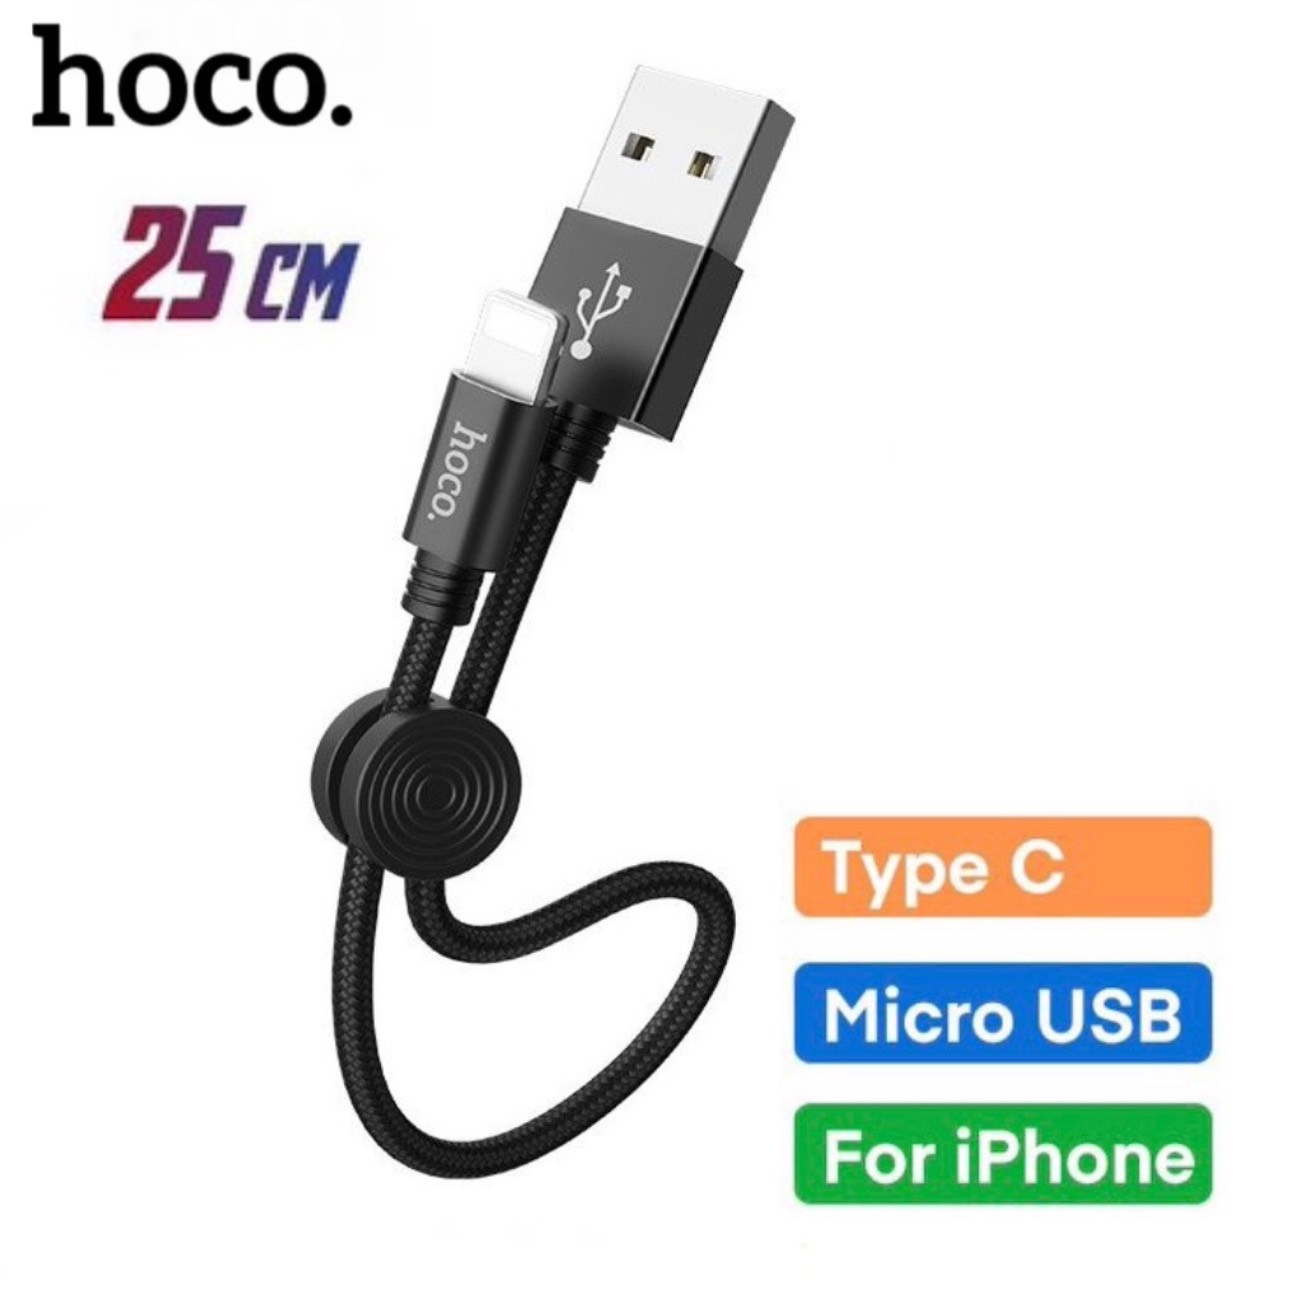 Dây sạc ngắn 25cm HOCO tiện dùng cho pin sạc dự phòng cho type c micro usb iphone